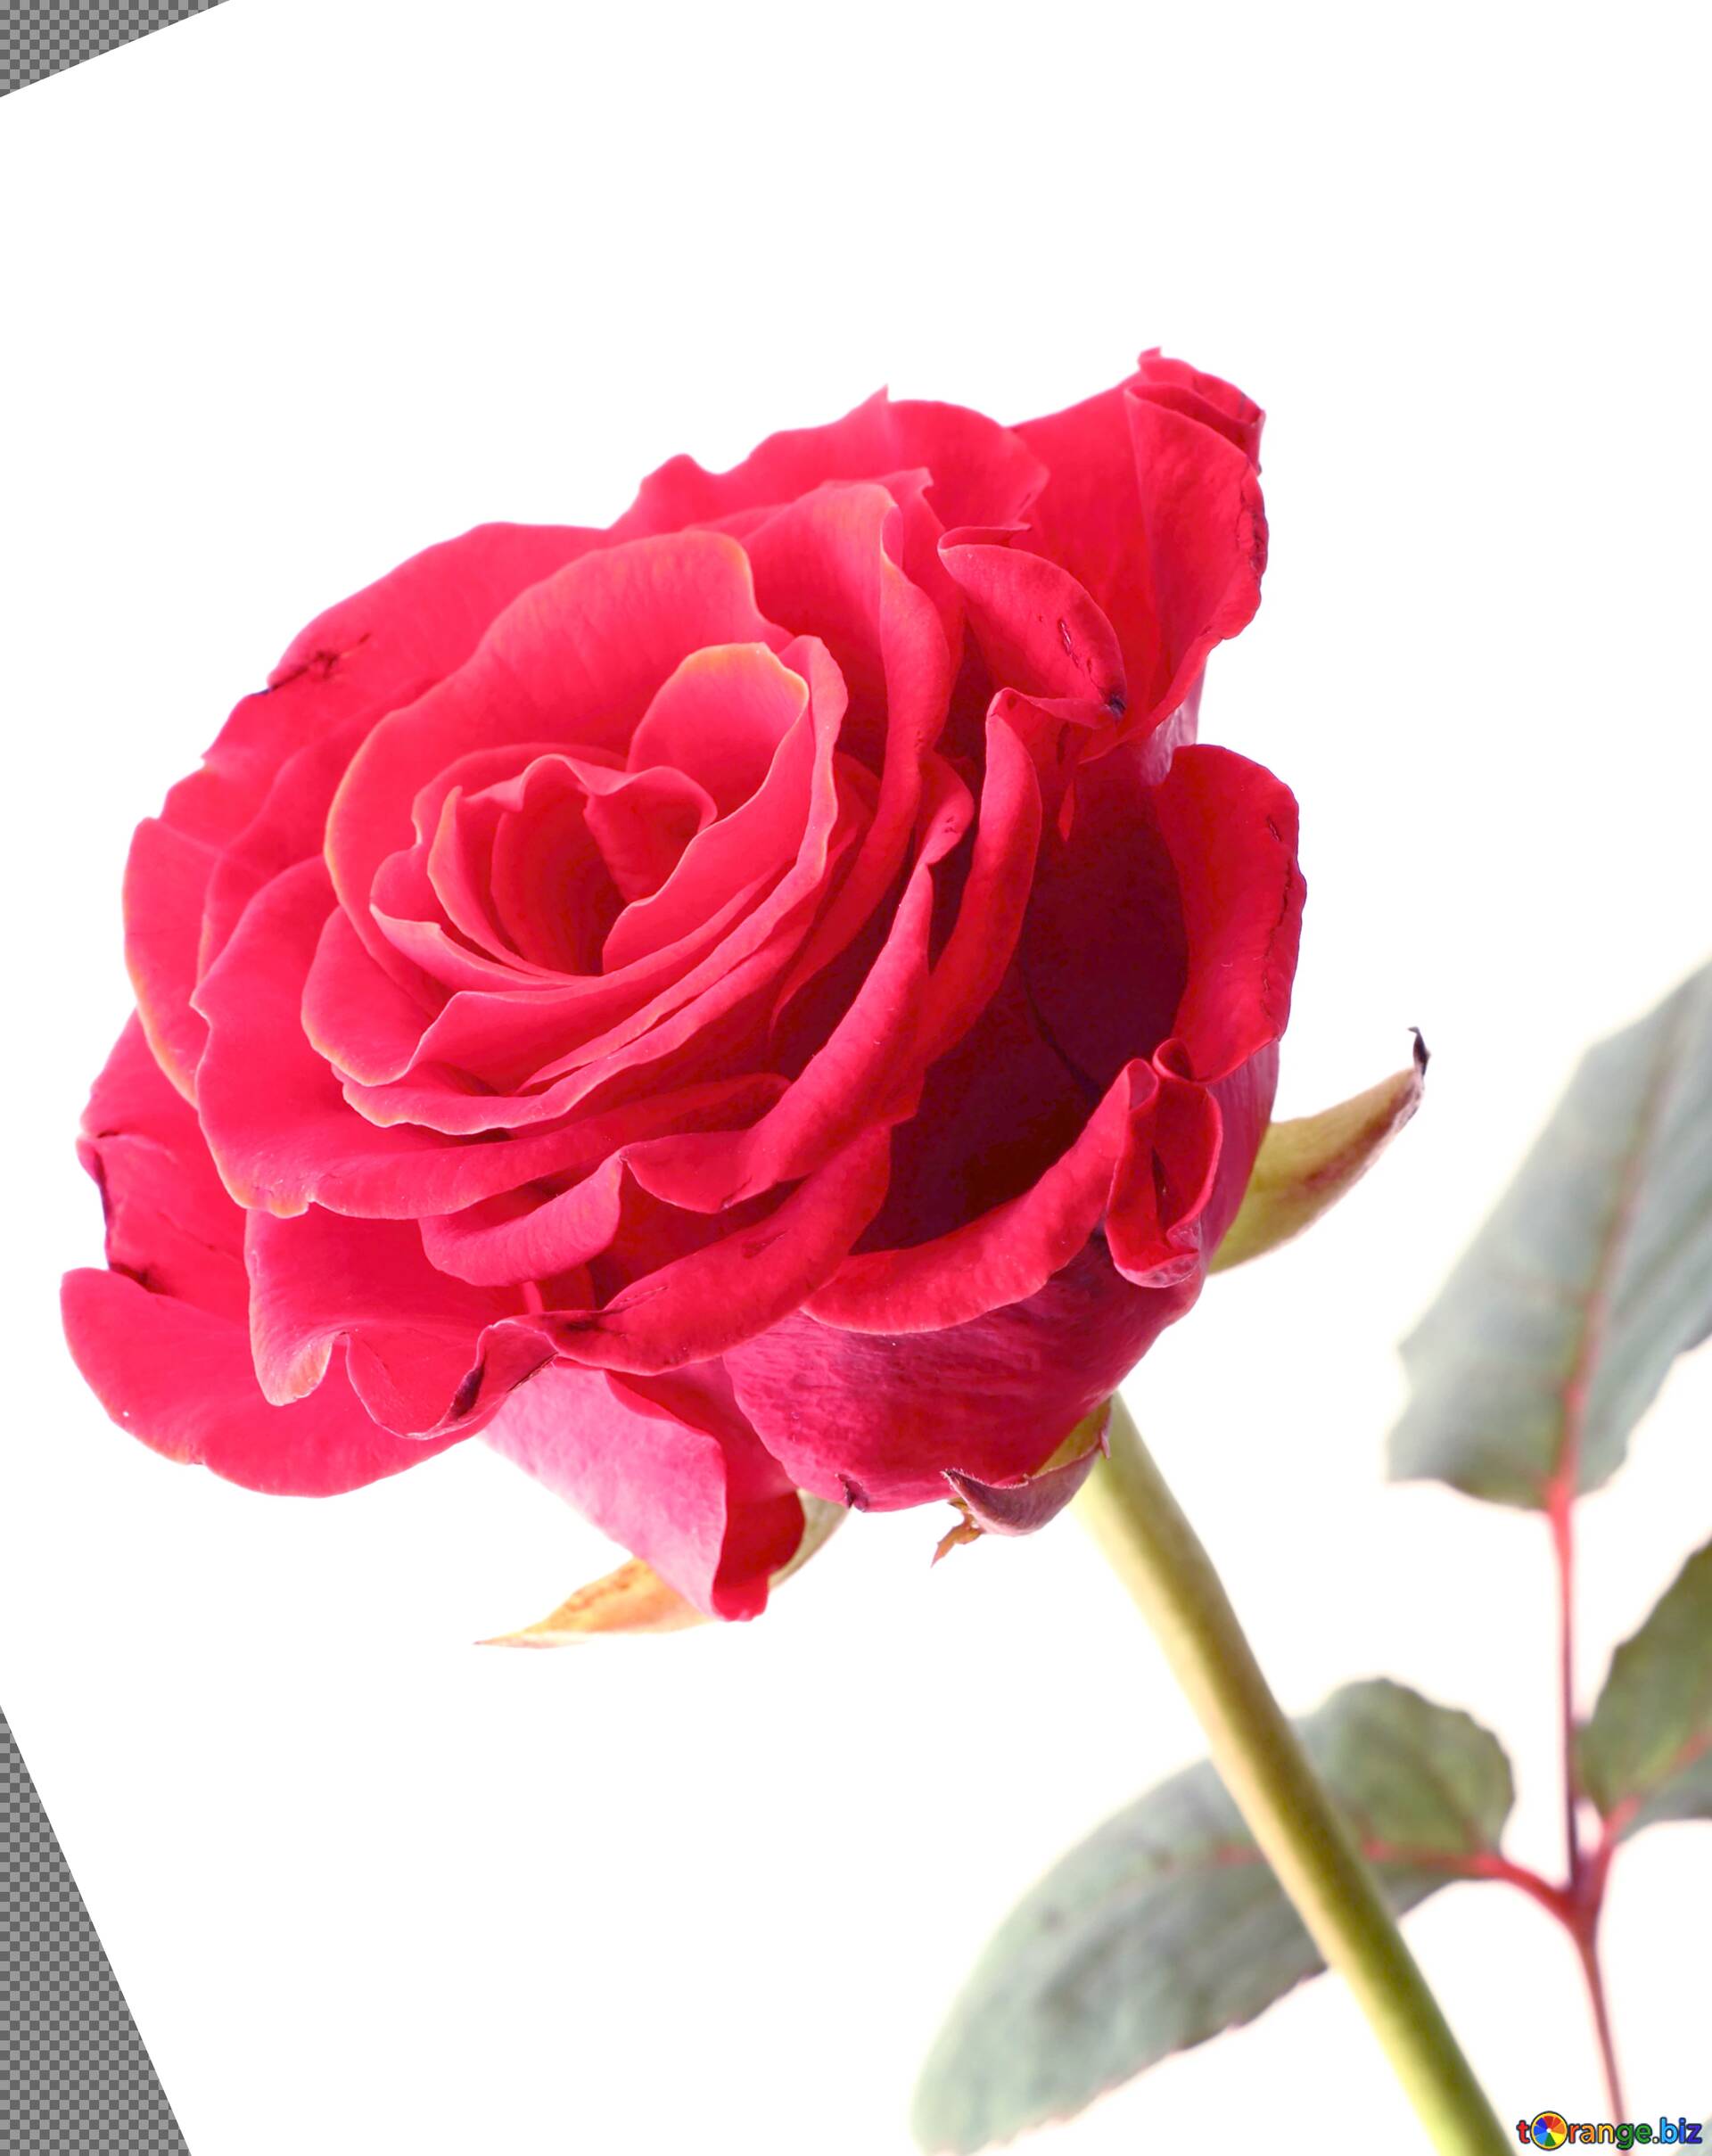 Một bông hoa hồng màu hồng tươi trên nền trắng sáng lộ ra vẻ đẹp tinh khôi và nhẹ nhàng. Hãy chiêm ngưỡng hình ảnh này và cảm nhận sự tinh tế của nó.